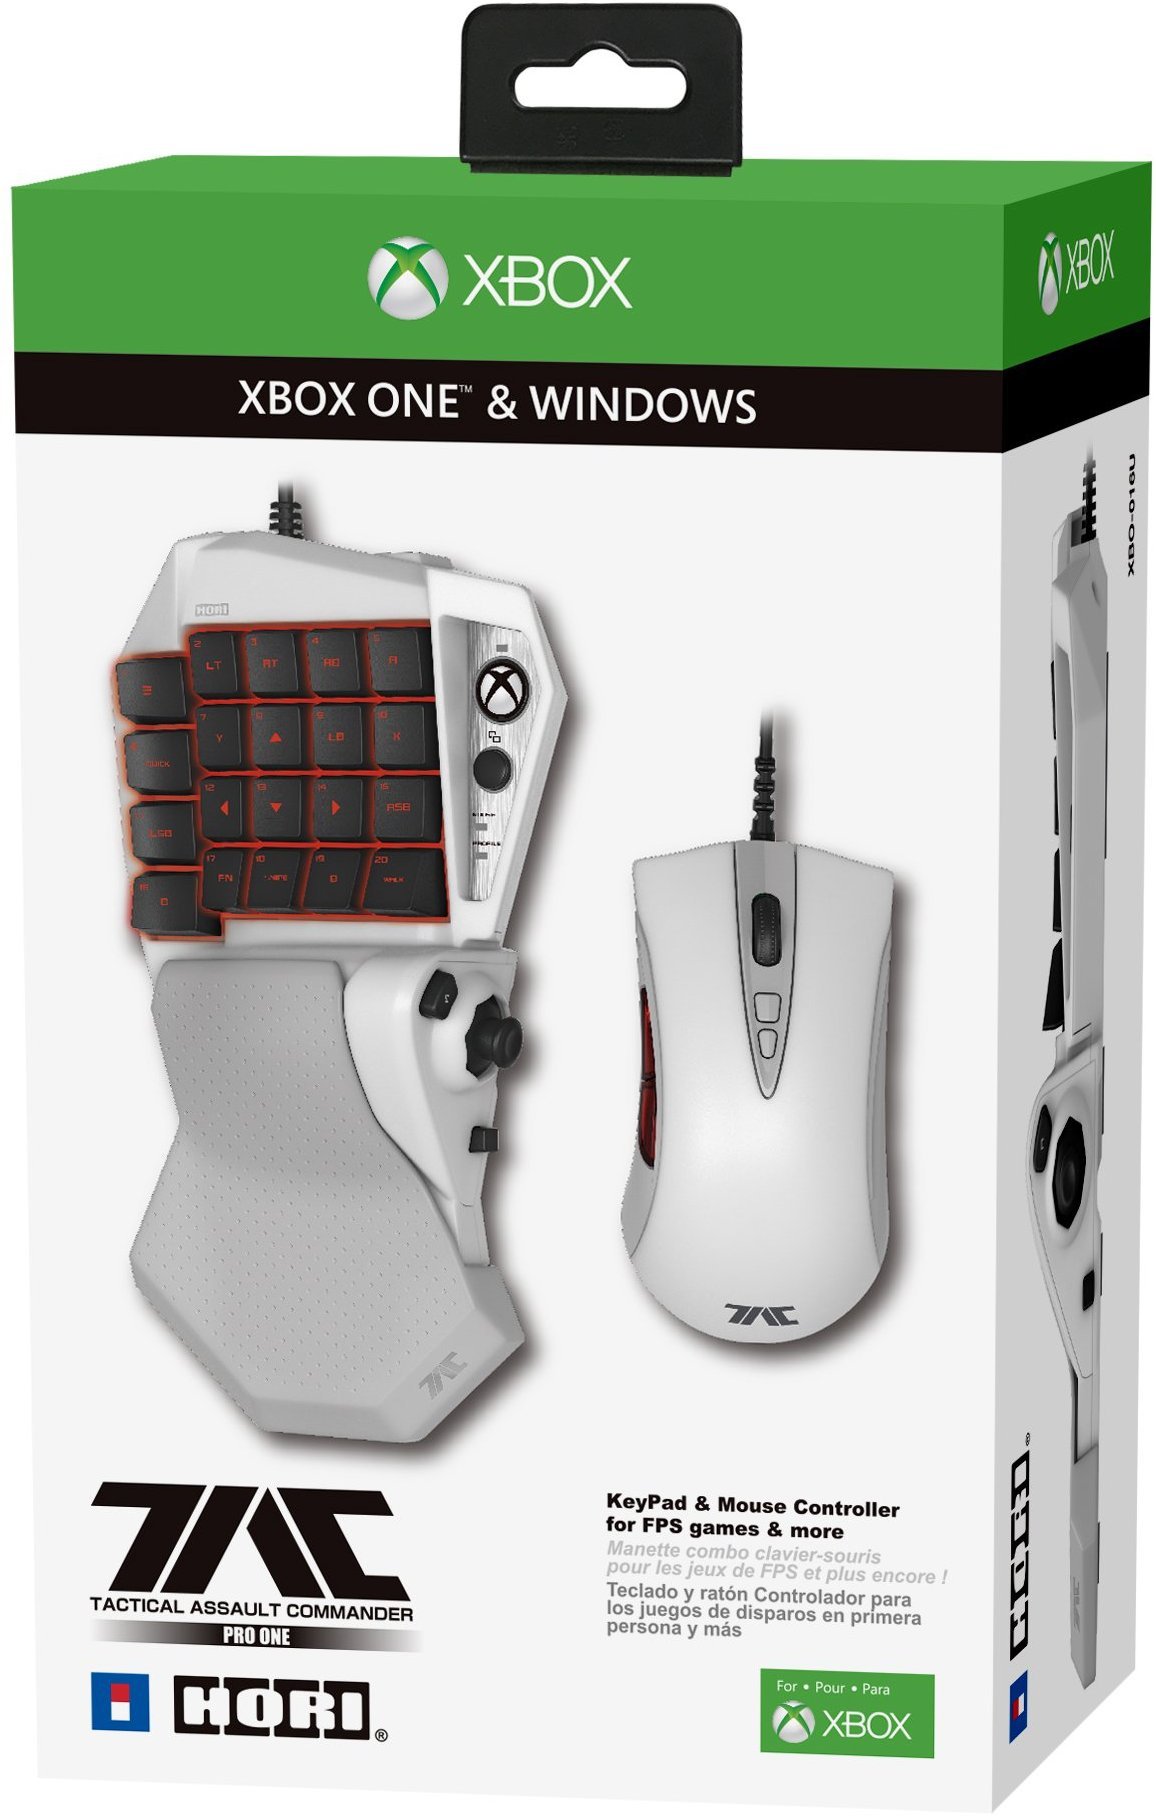 Lista com jogos de Xbox One com suporte a Teclado e Mouse